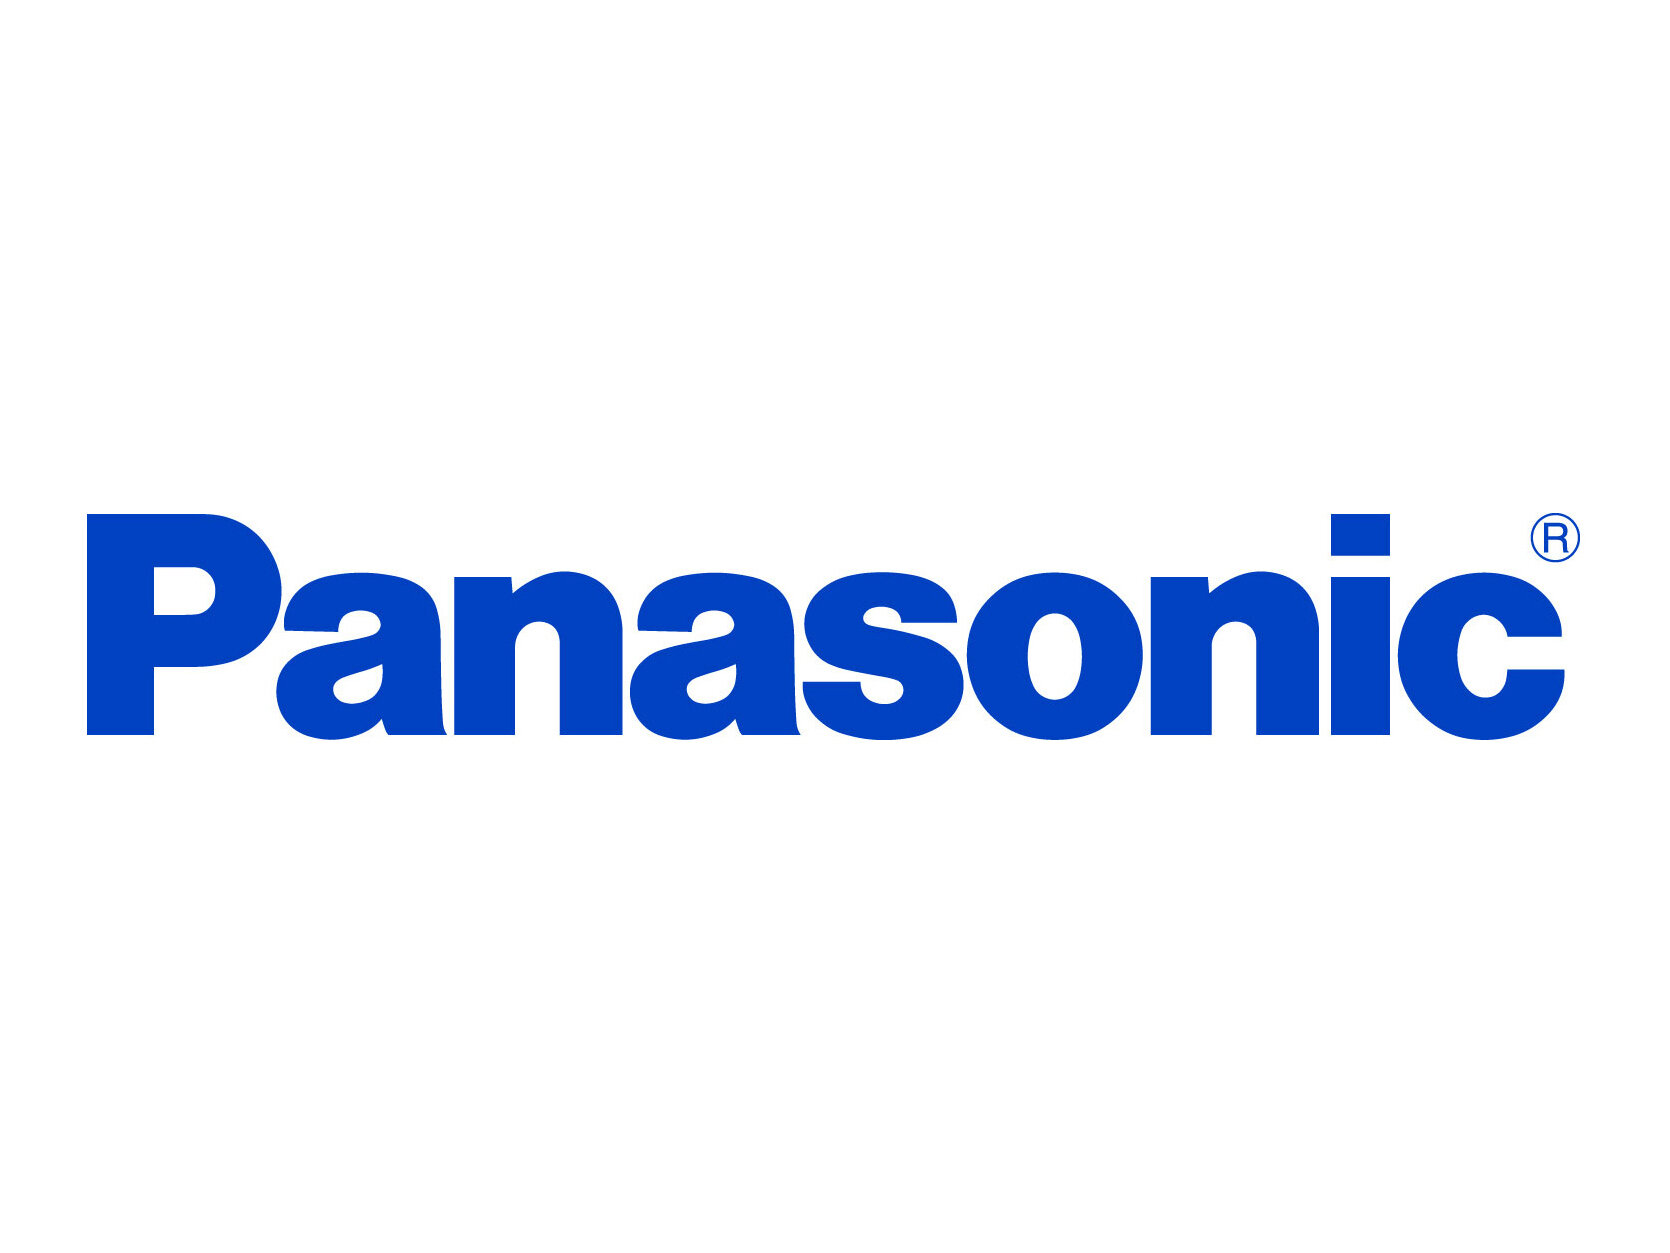 Panasonic 2018.jpg